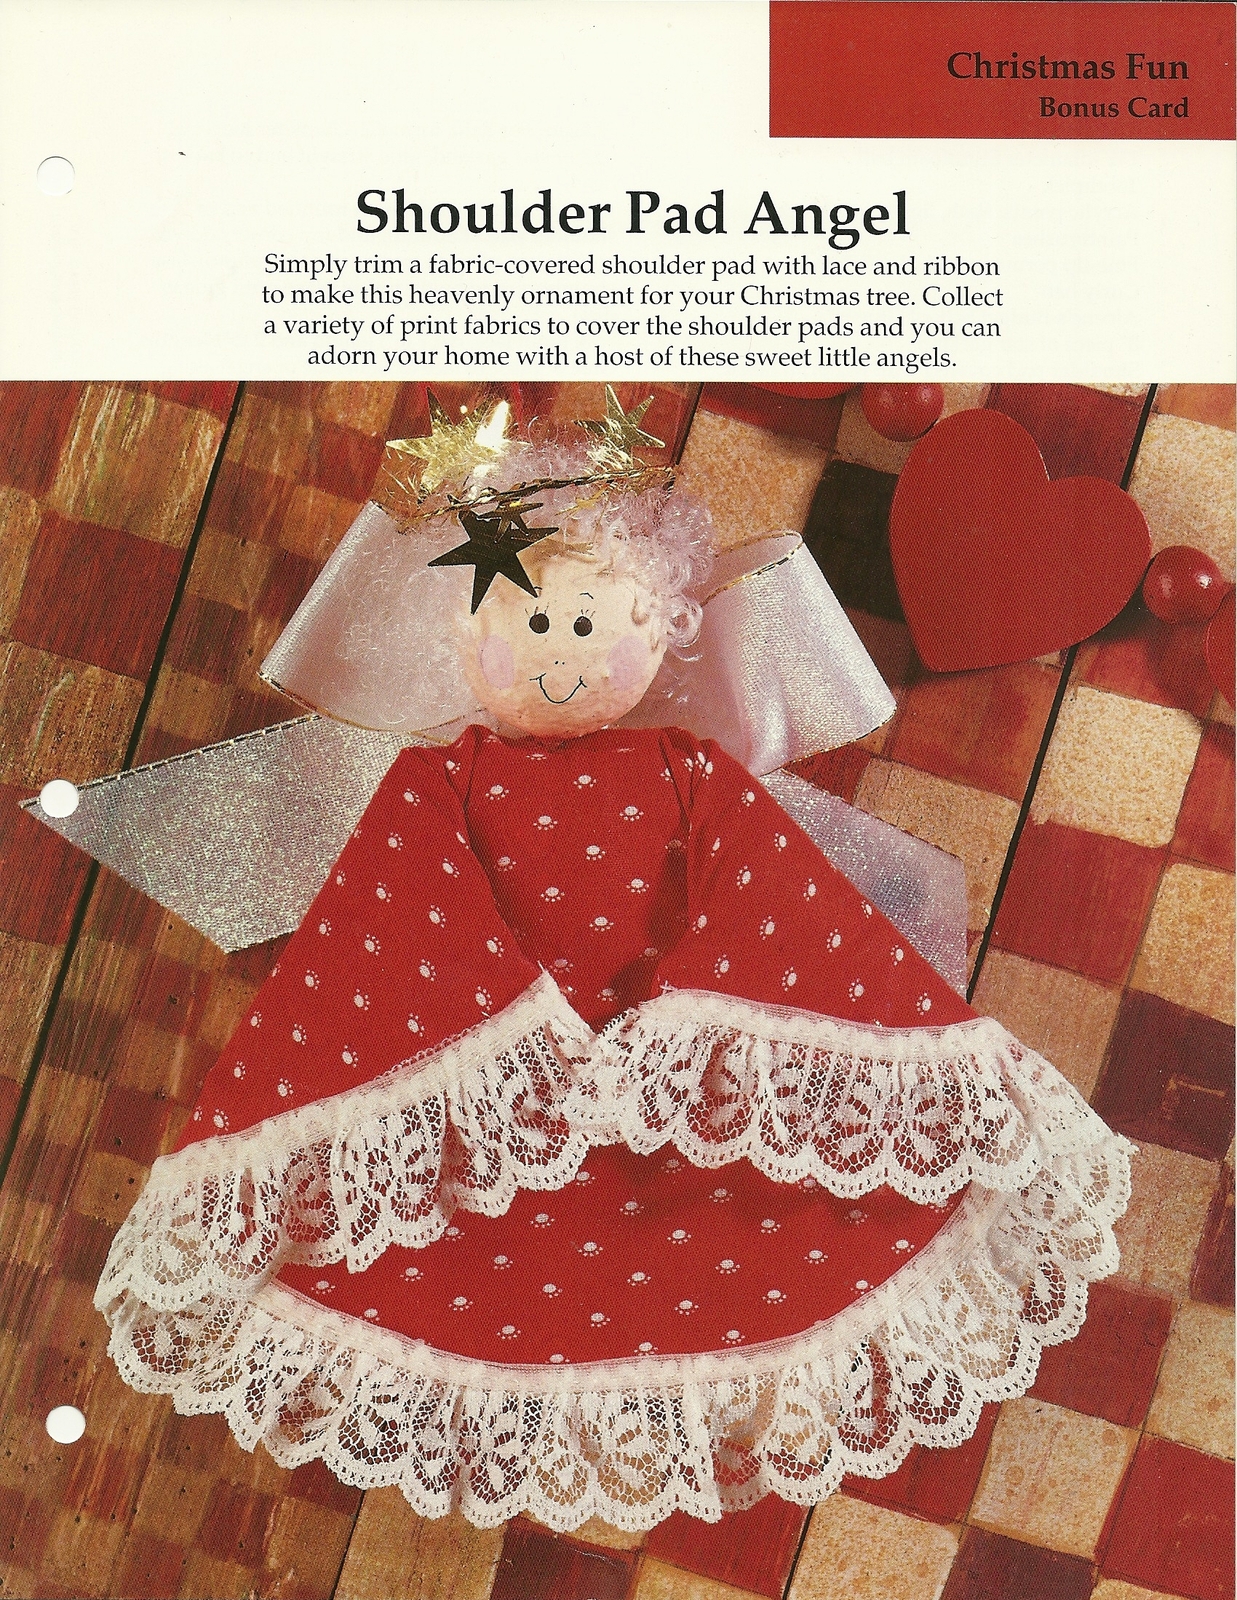 Shoulder Pad Angel Instructional Leaflet Christmas Tree Ornament Vintage - $1.99